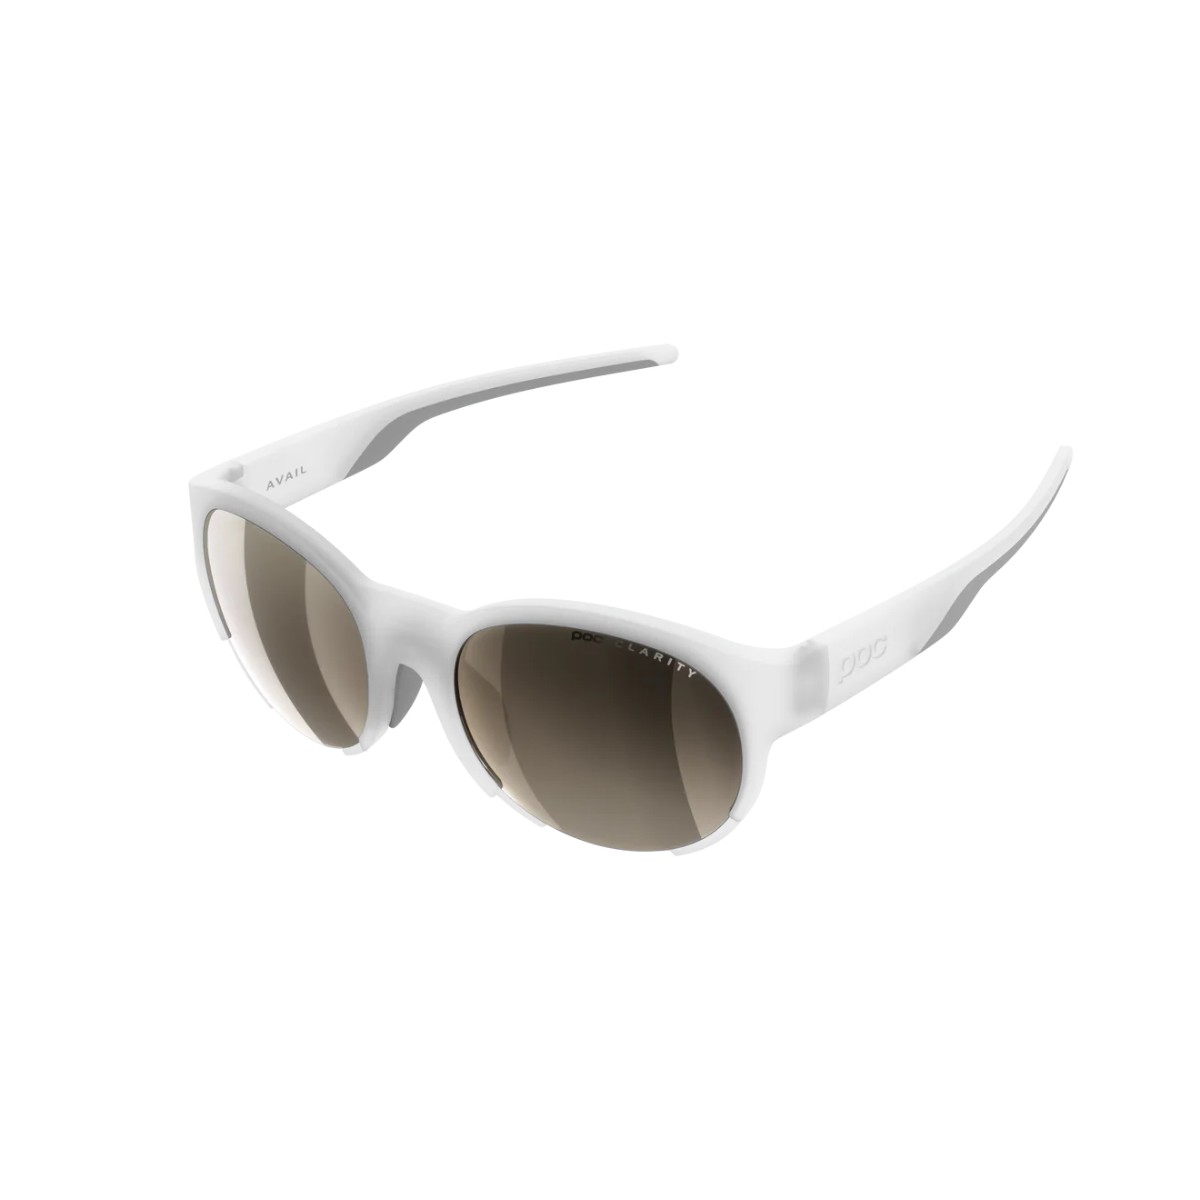 POC Avail Weiße Brillen mit Braunen Gläsern